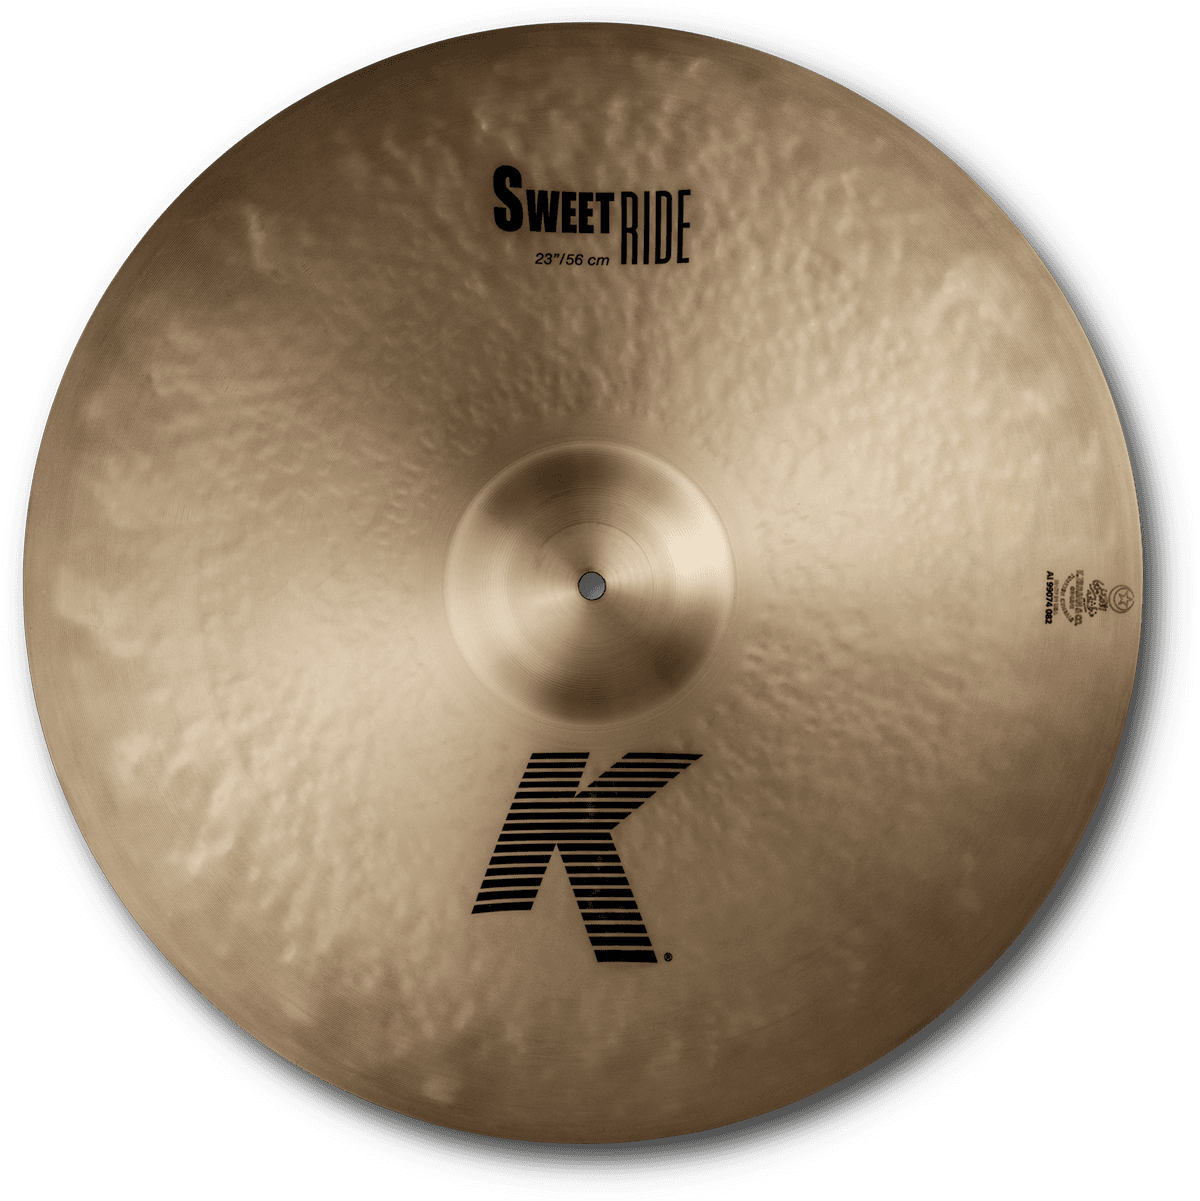 Zildjian K Ride Sweet 23 - Ride cymbal - Variation 2